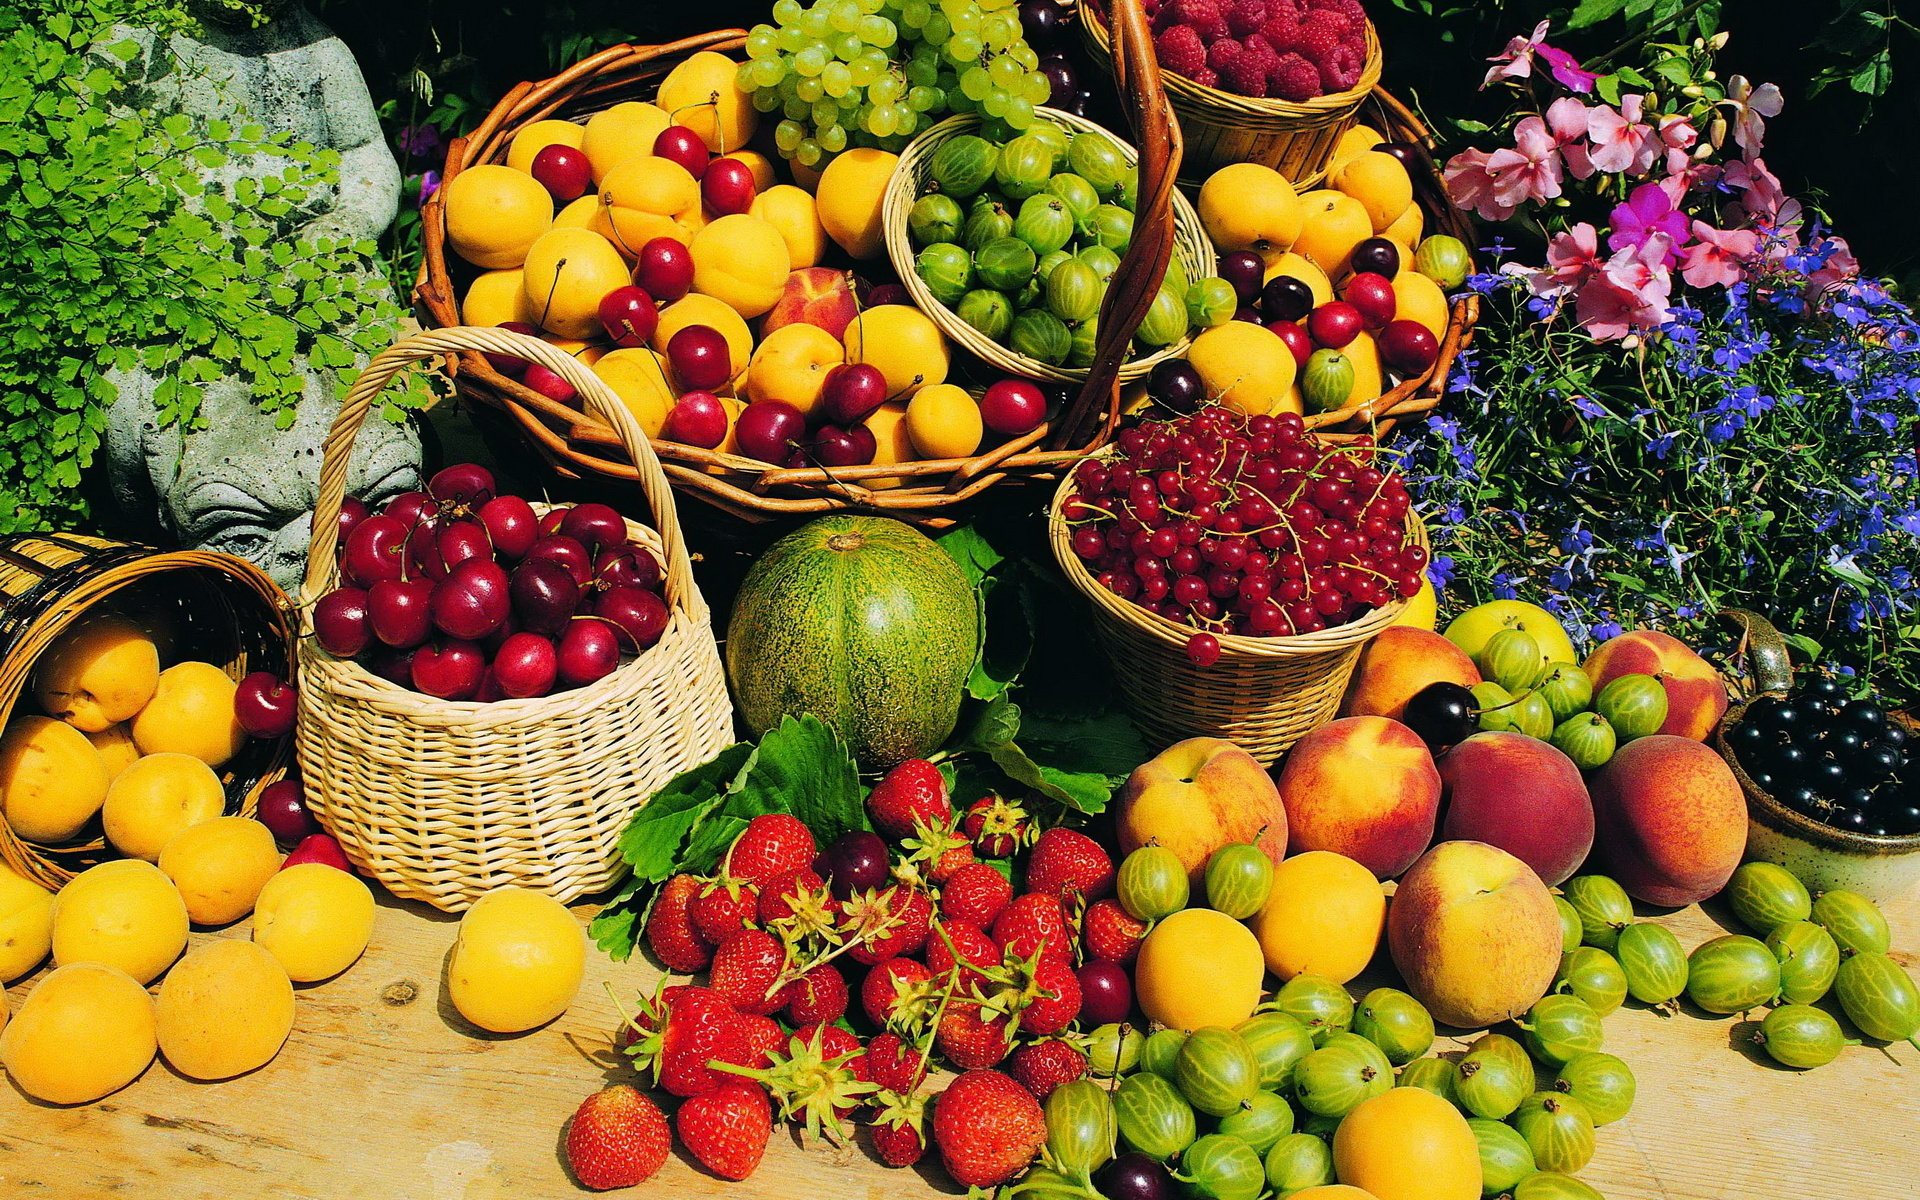 Фрукты и ягоды спелые. Мева-сабзавот кластер. Фрукты и ягоды. Овощи, фрукты, ягоды. Летние фрукты.